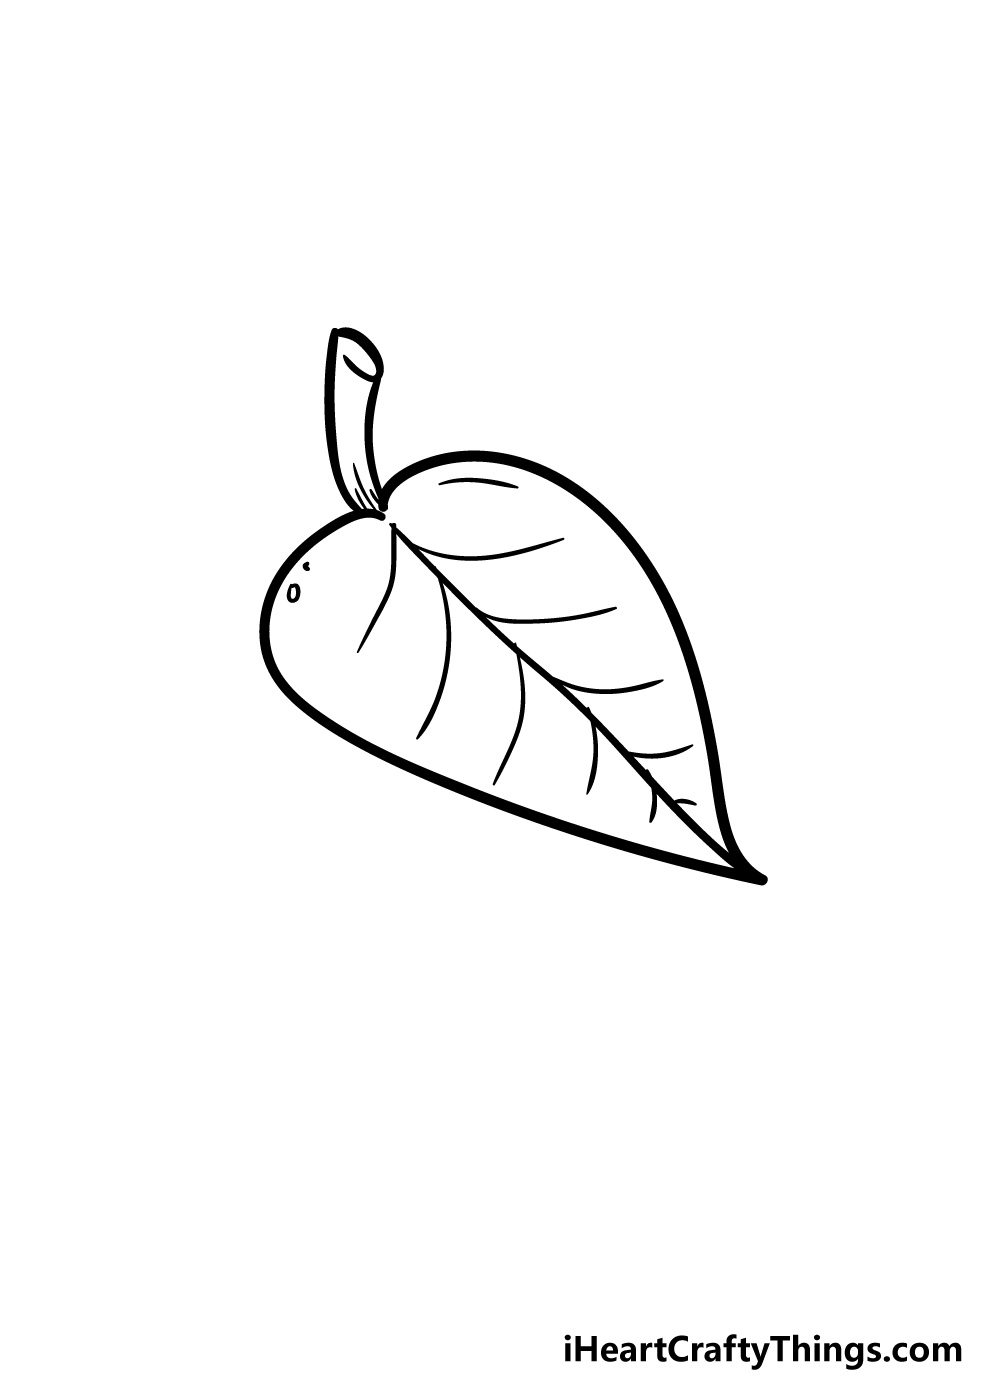 LEaf5 - Hướng dẫn cách vẽ chiếc lá cây đơn giản với 6 bước cơ bản